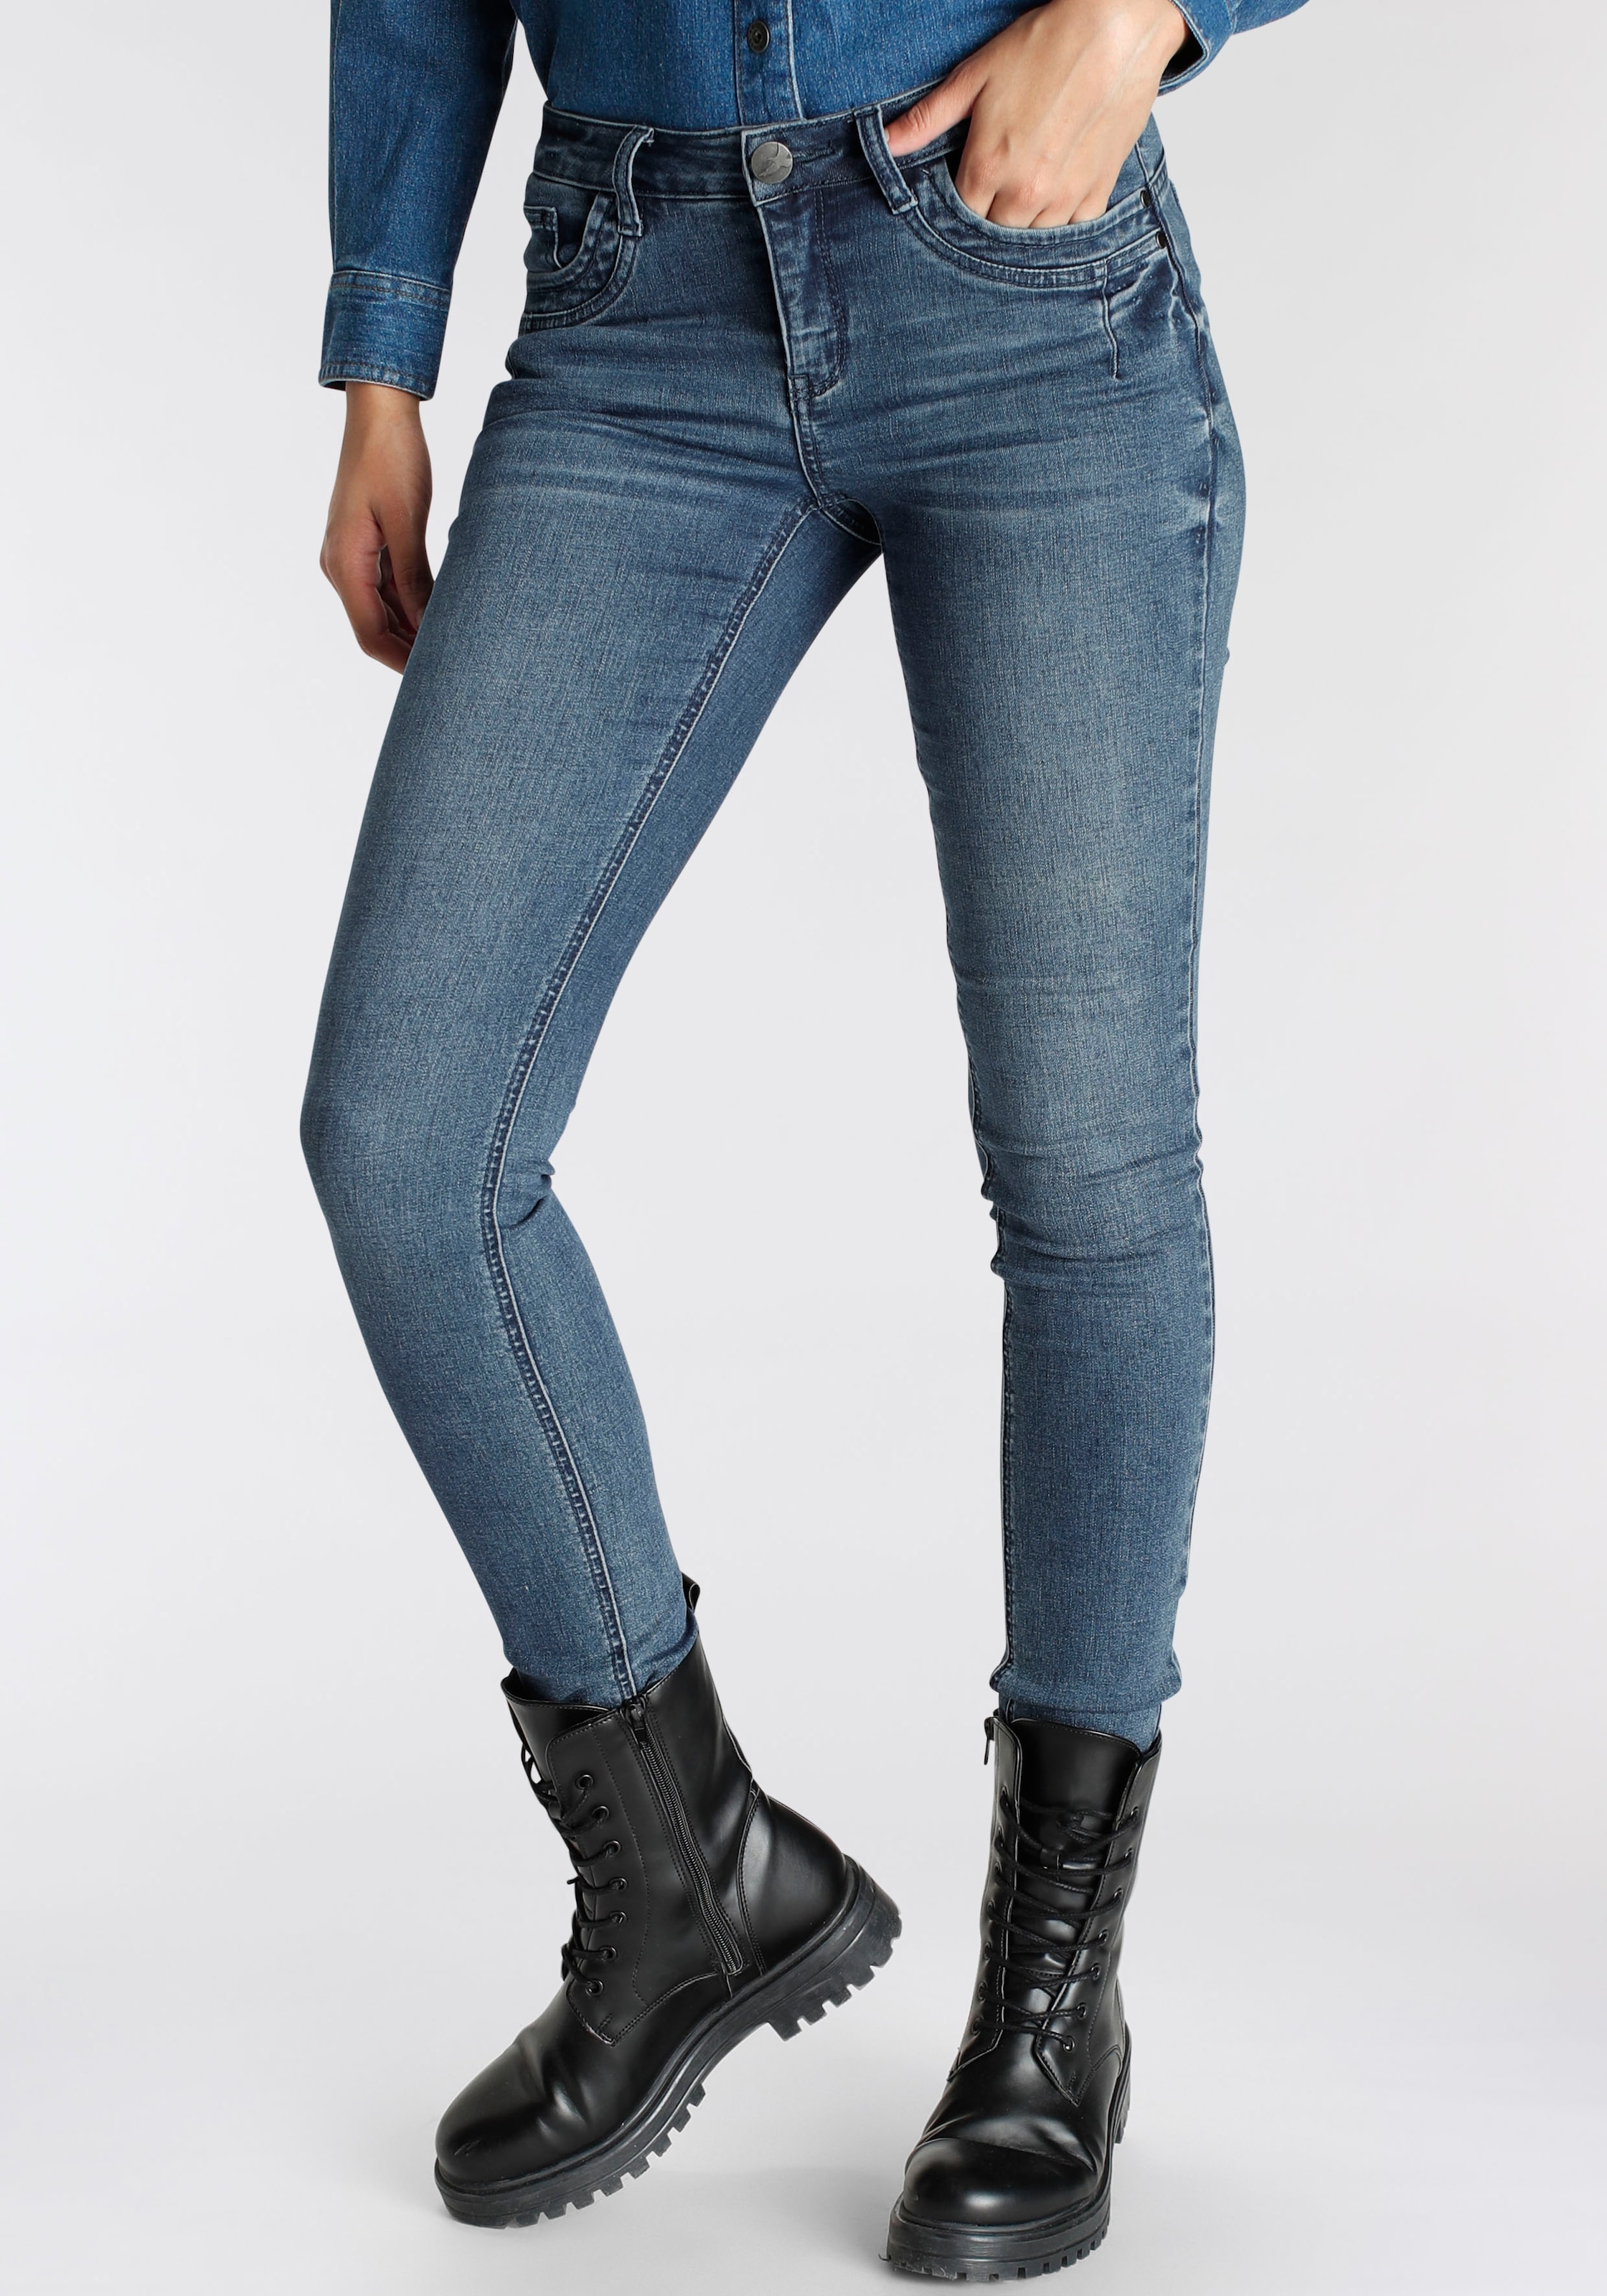 Arizona BAUR | & günstige Jeans %% Angebote SALE Outlet